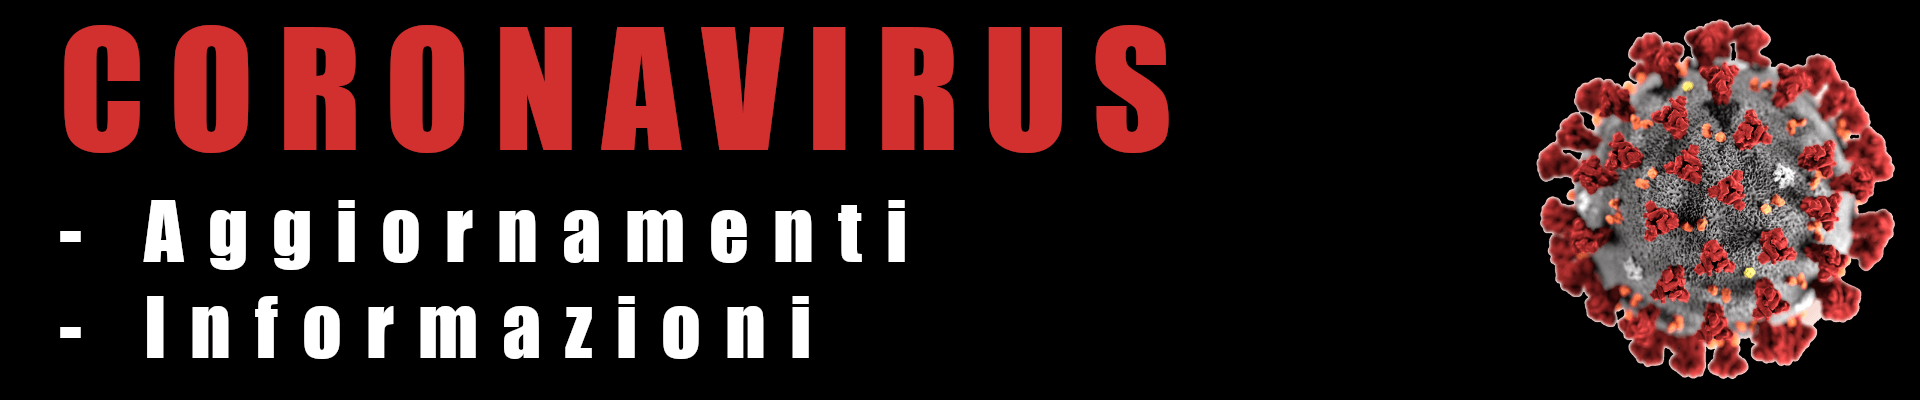 banner coronavirus.png